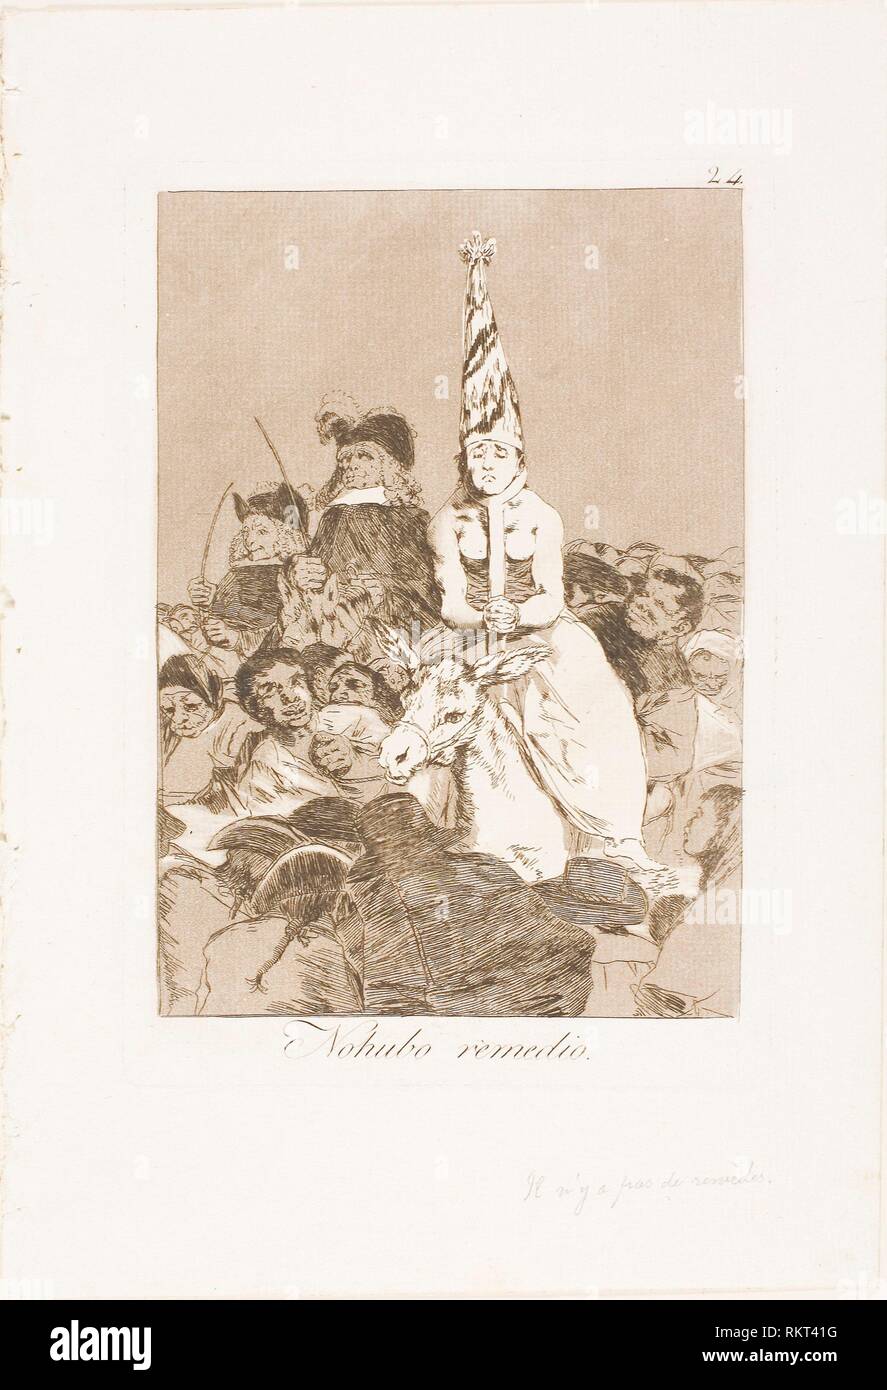 Rien ne pourrait être fait à ce sujet, la plaque 24 de Los Caprichos - 1797/99 - Francisco José de Goya y Lucientes espagnol, 1746-1828 - Artiste : Francisco Banque D'Images